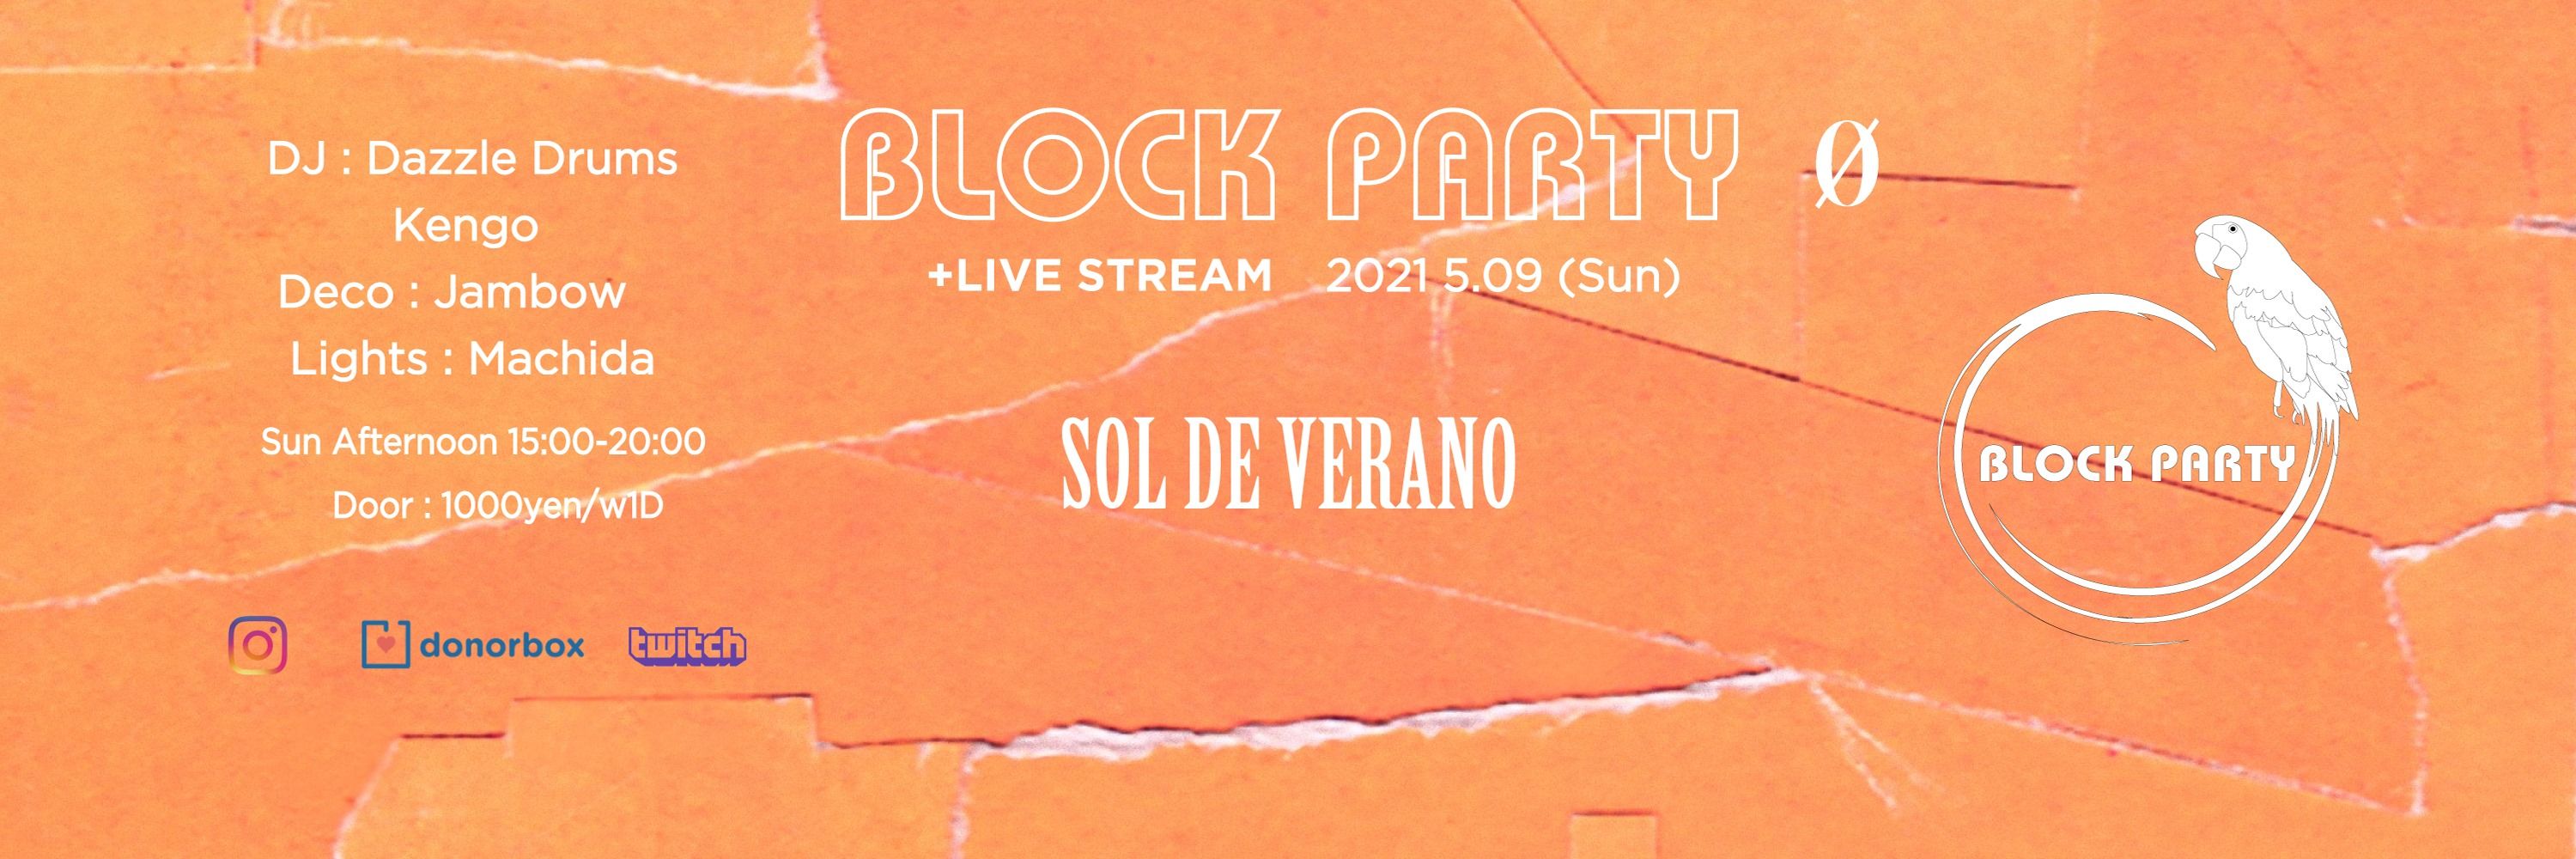  Live Stream - Block Party "Sol De Verano"  @ 0 Zero